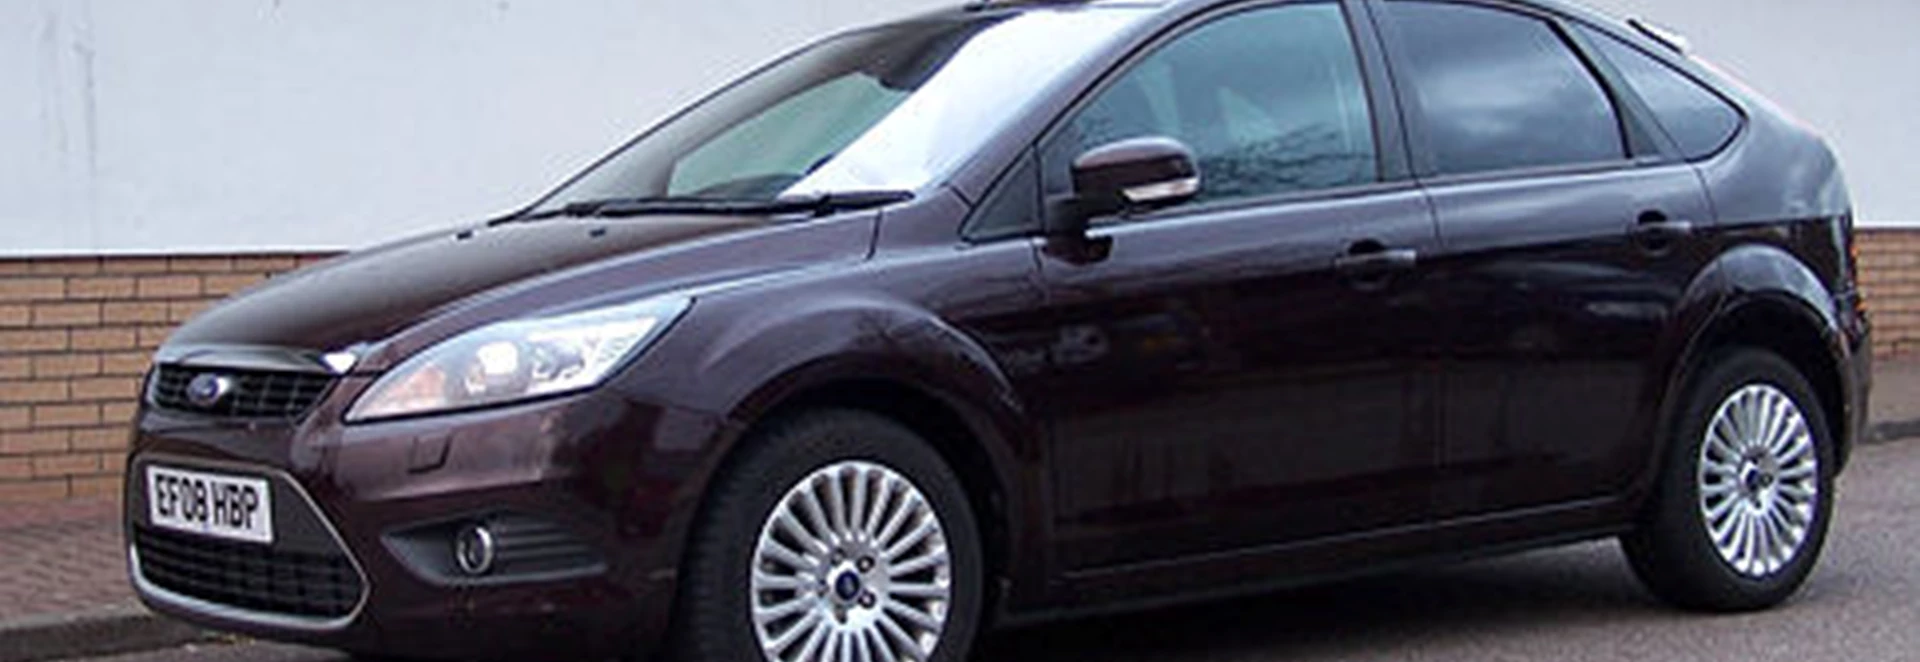 Ford Focus 2.0 TDCi 135 Titanium Powershift (2008) 